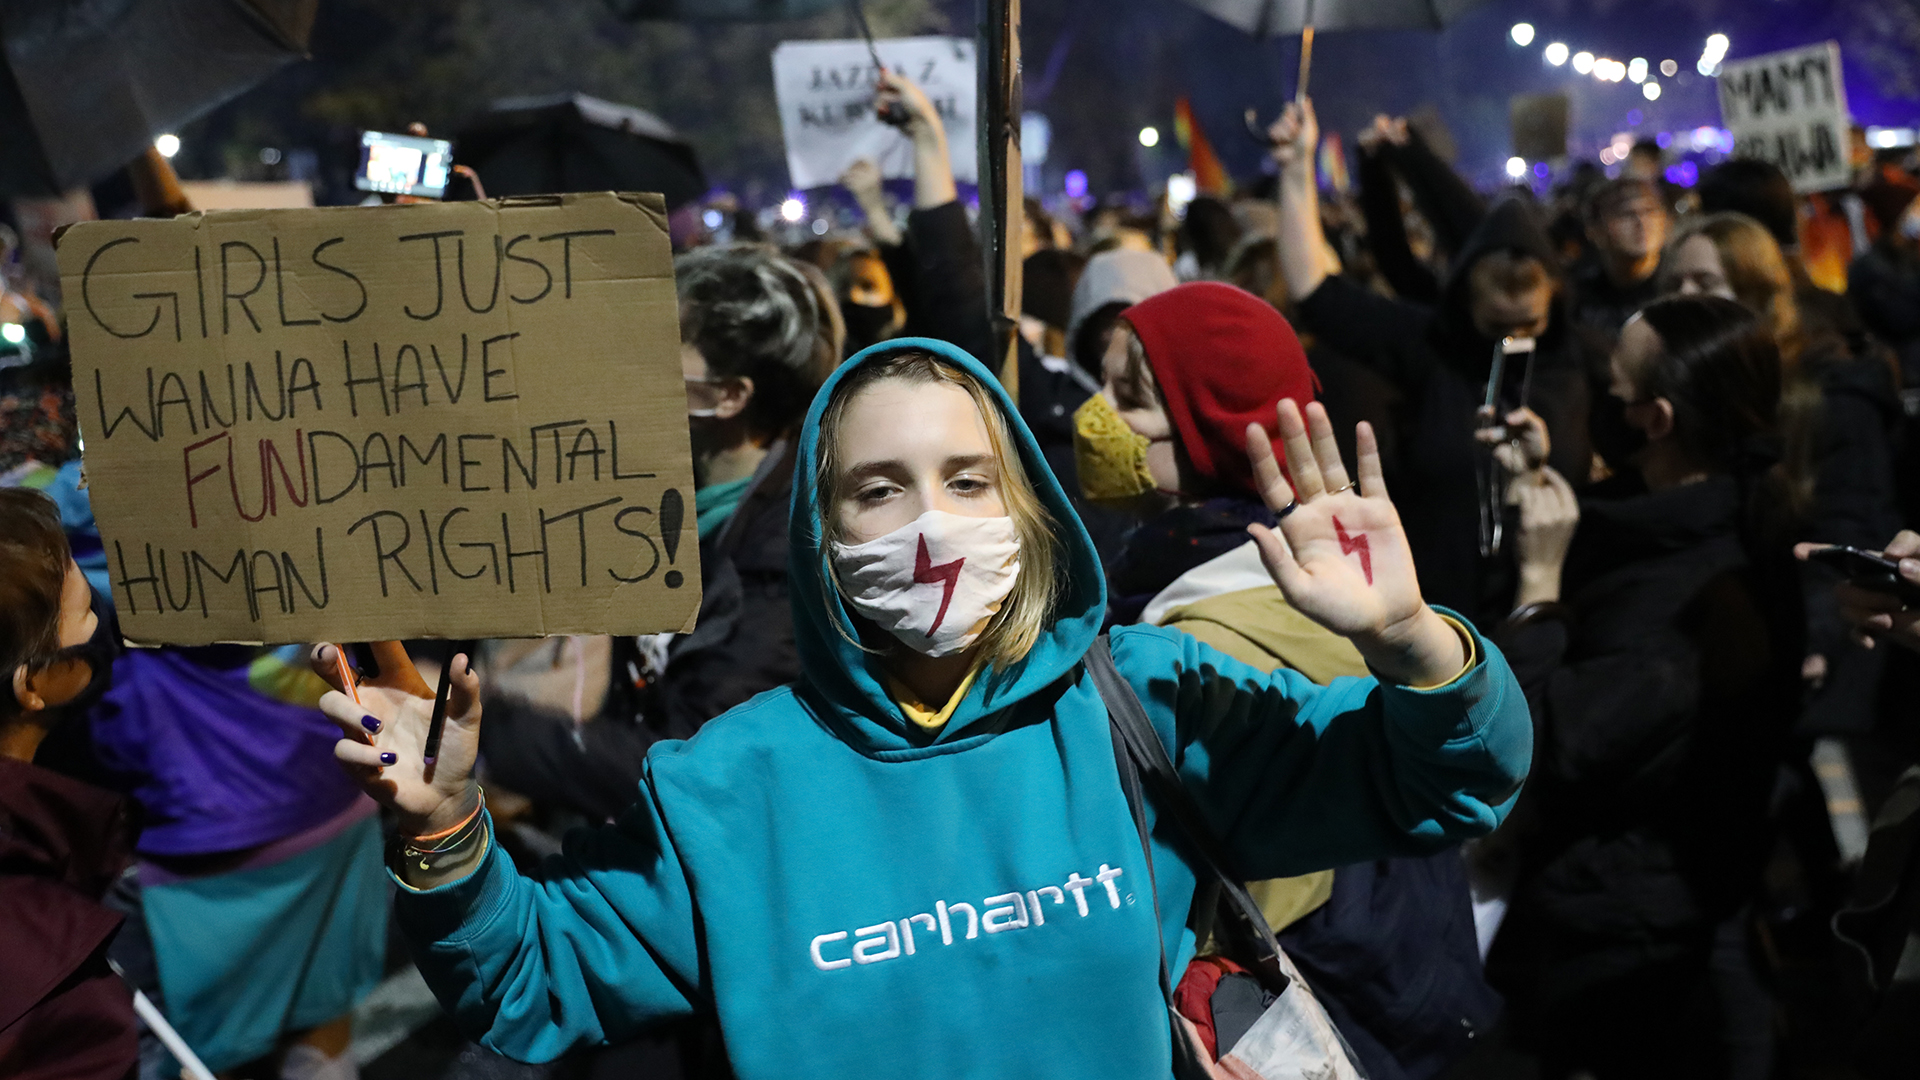 Eine Demonstrantin nimmt am «Marsch der schweigenden Frauenen» teil und trägt ein Banner mit der Aufschrift "Girls just wanna have fundamental human rights" | dpa